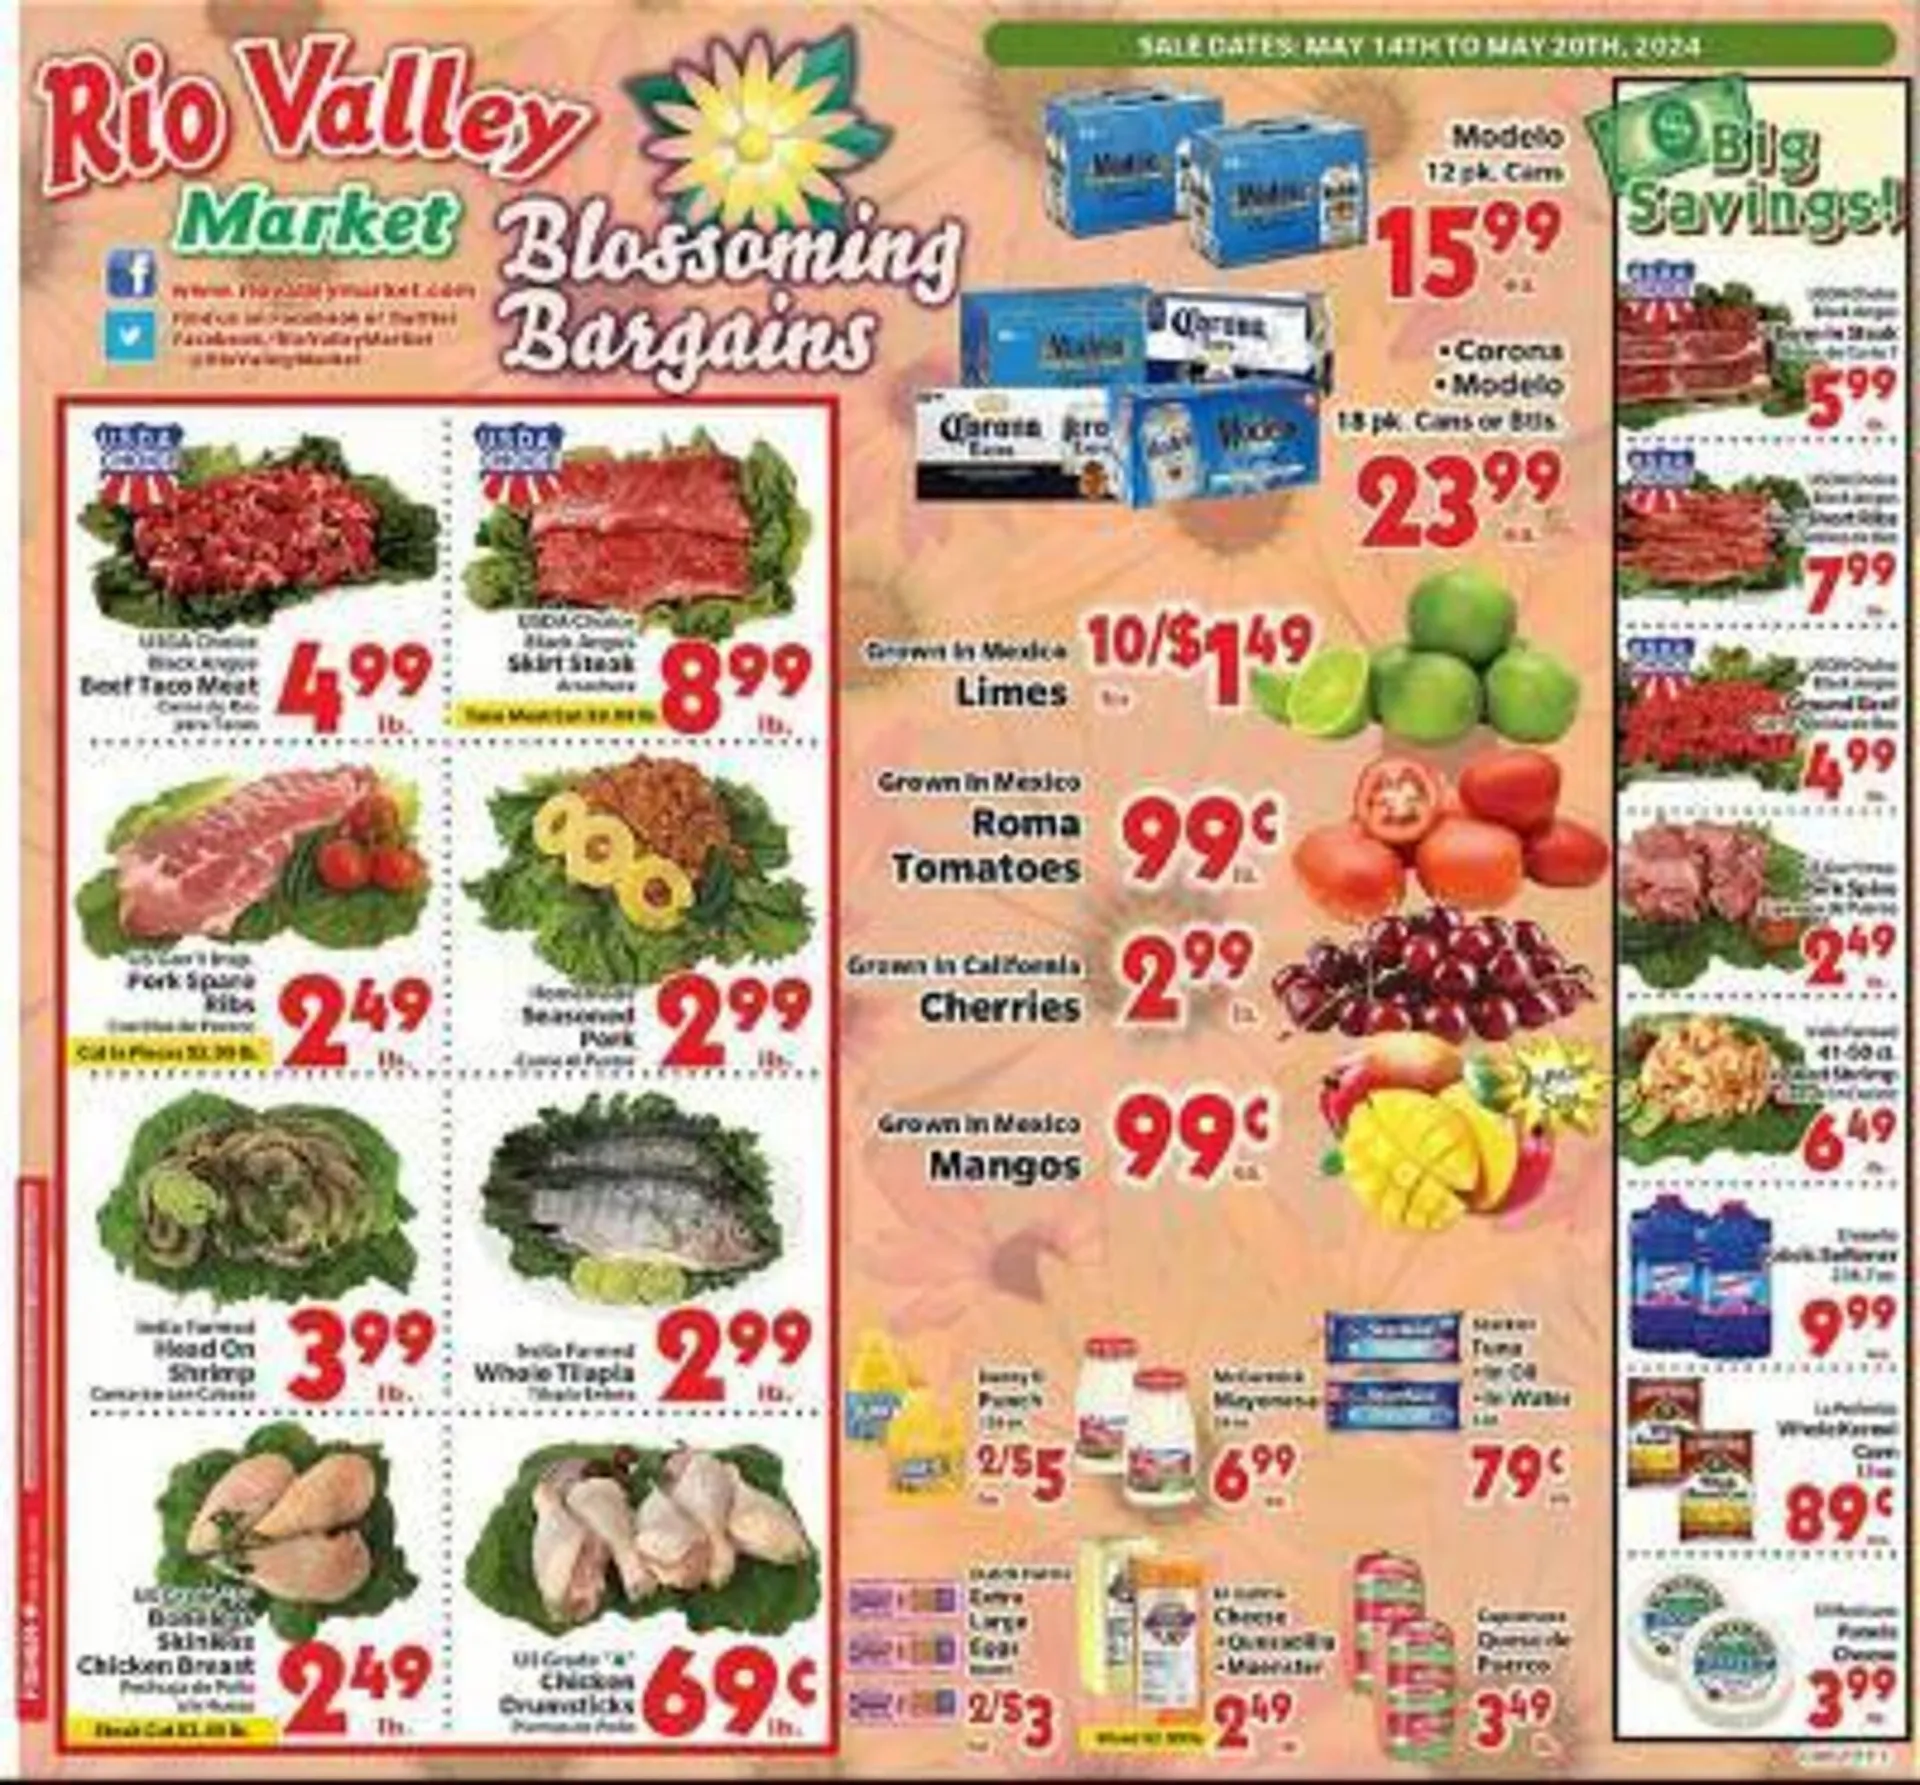 Rio Valley Market Weekly Ad - 1